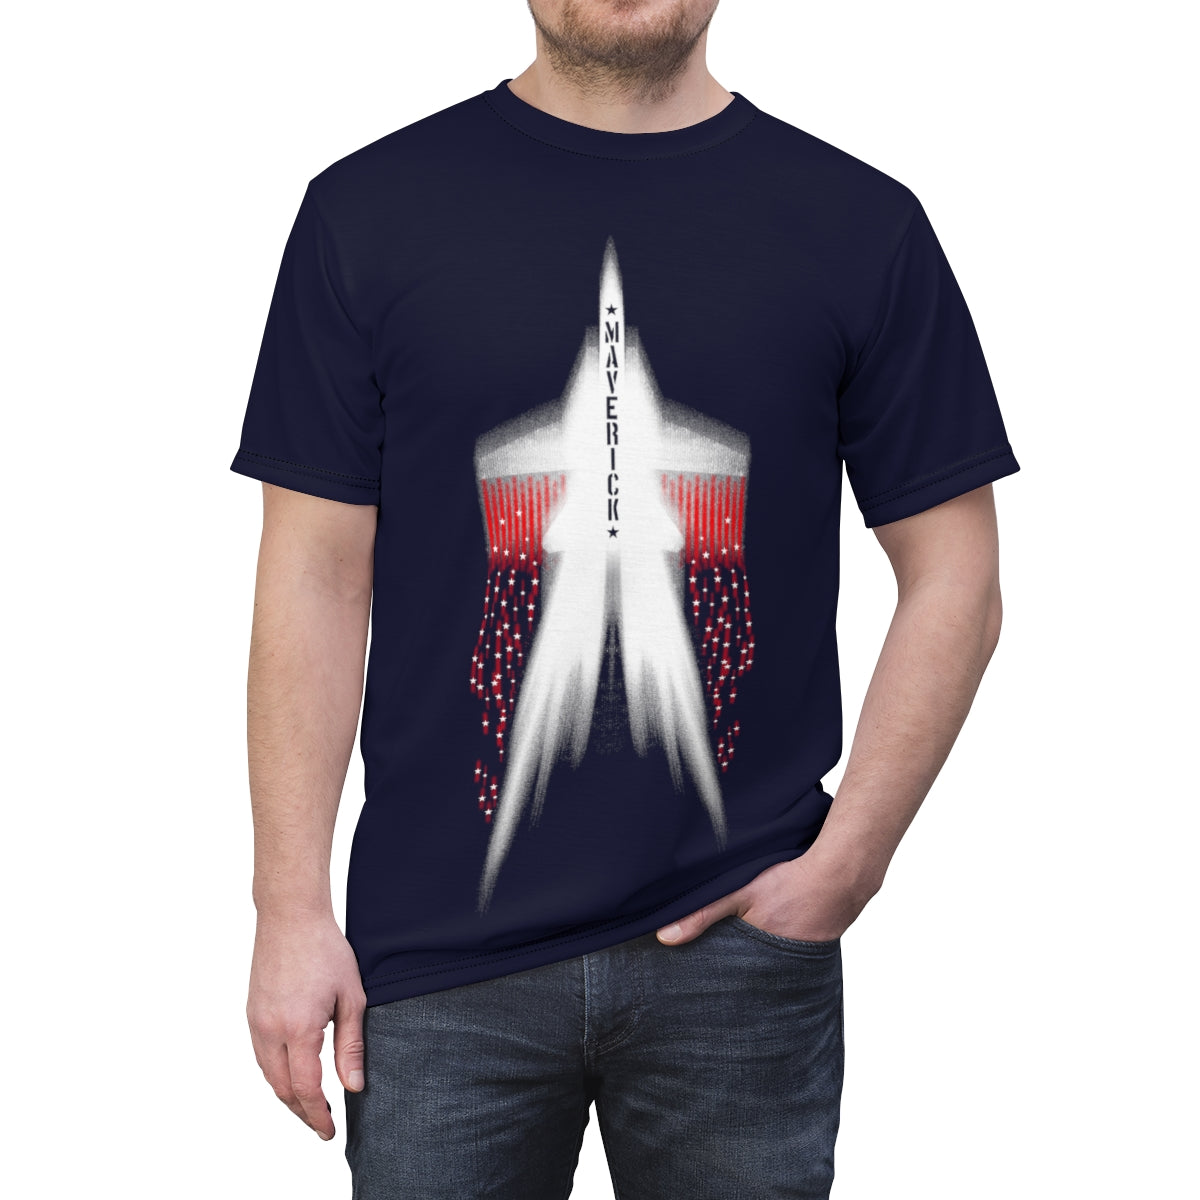 Top Gun T-Shirt with Maverick F14